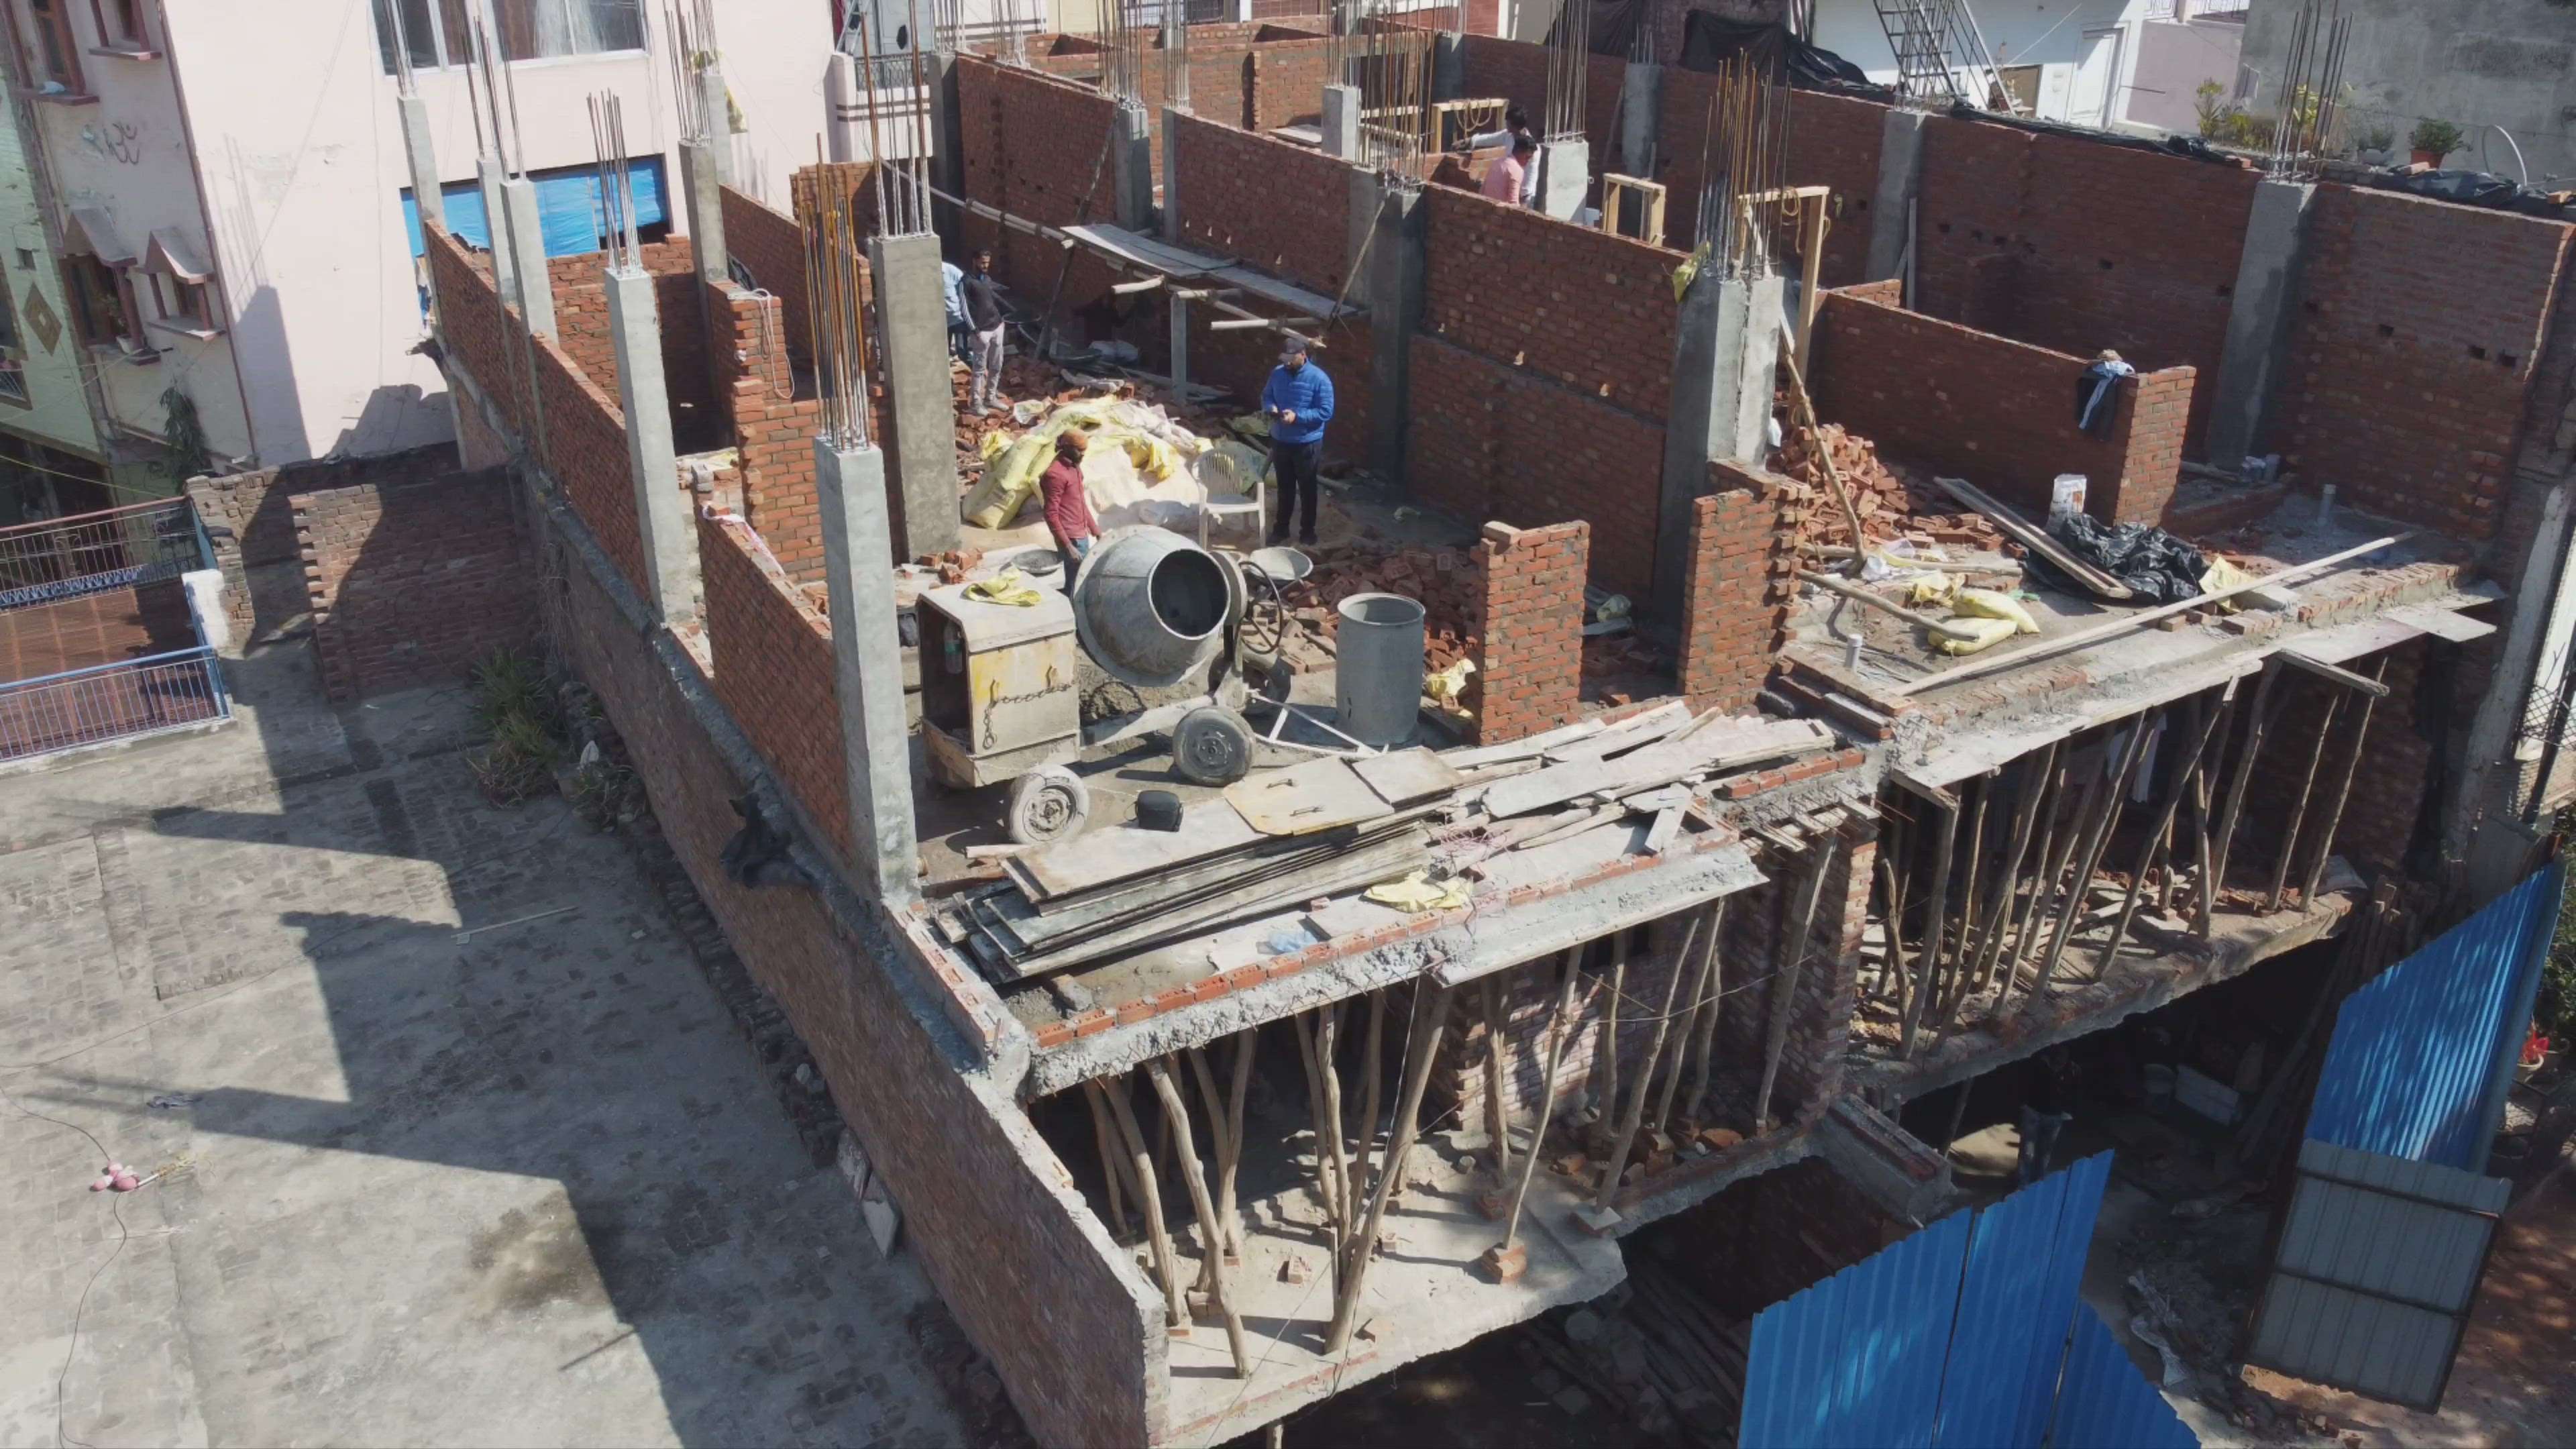 Construction work at site.

#builderfloor #Brickwork #sitework #structural_design #Contractor #withmaterialconstruction #HouseConstruction #constructionsite #designtechinfrabiz #HouseDesigns